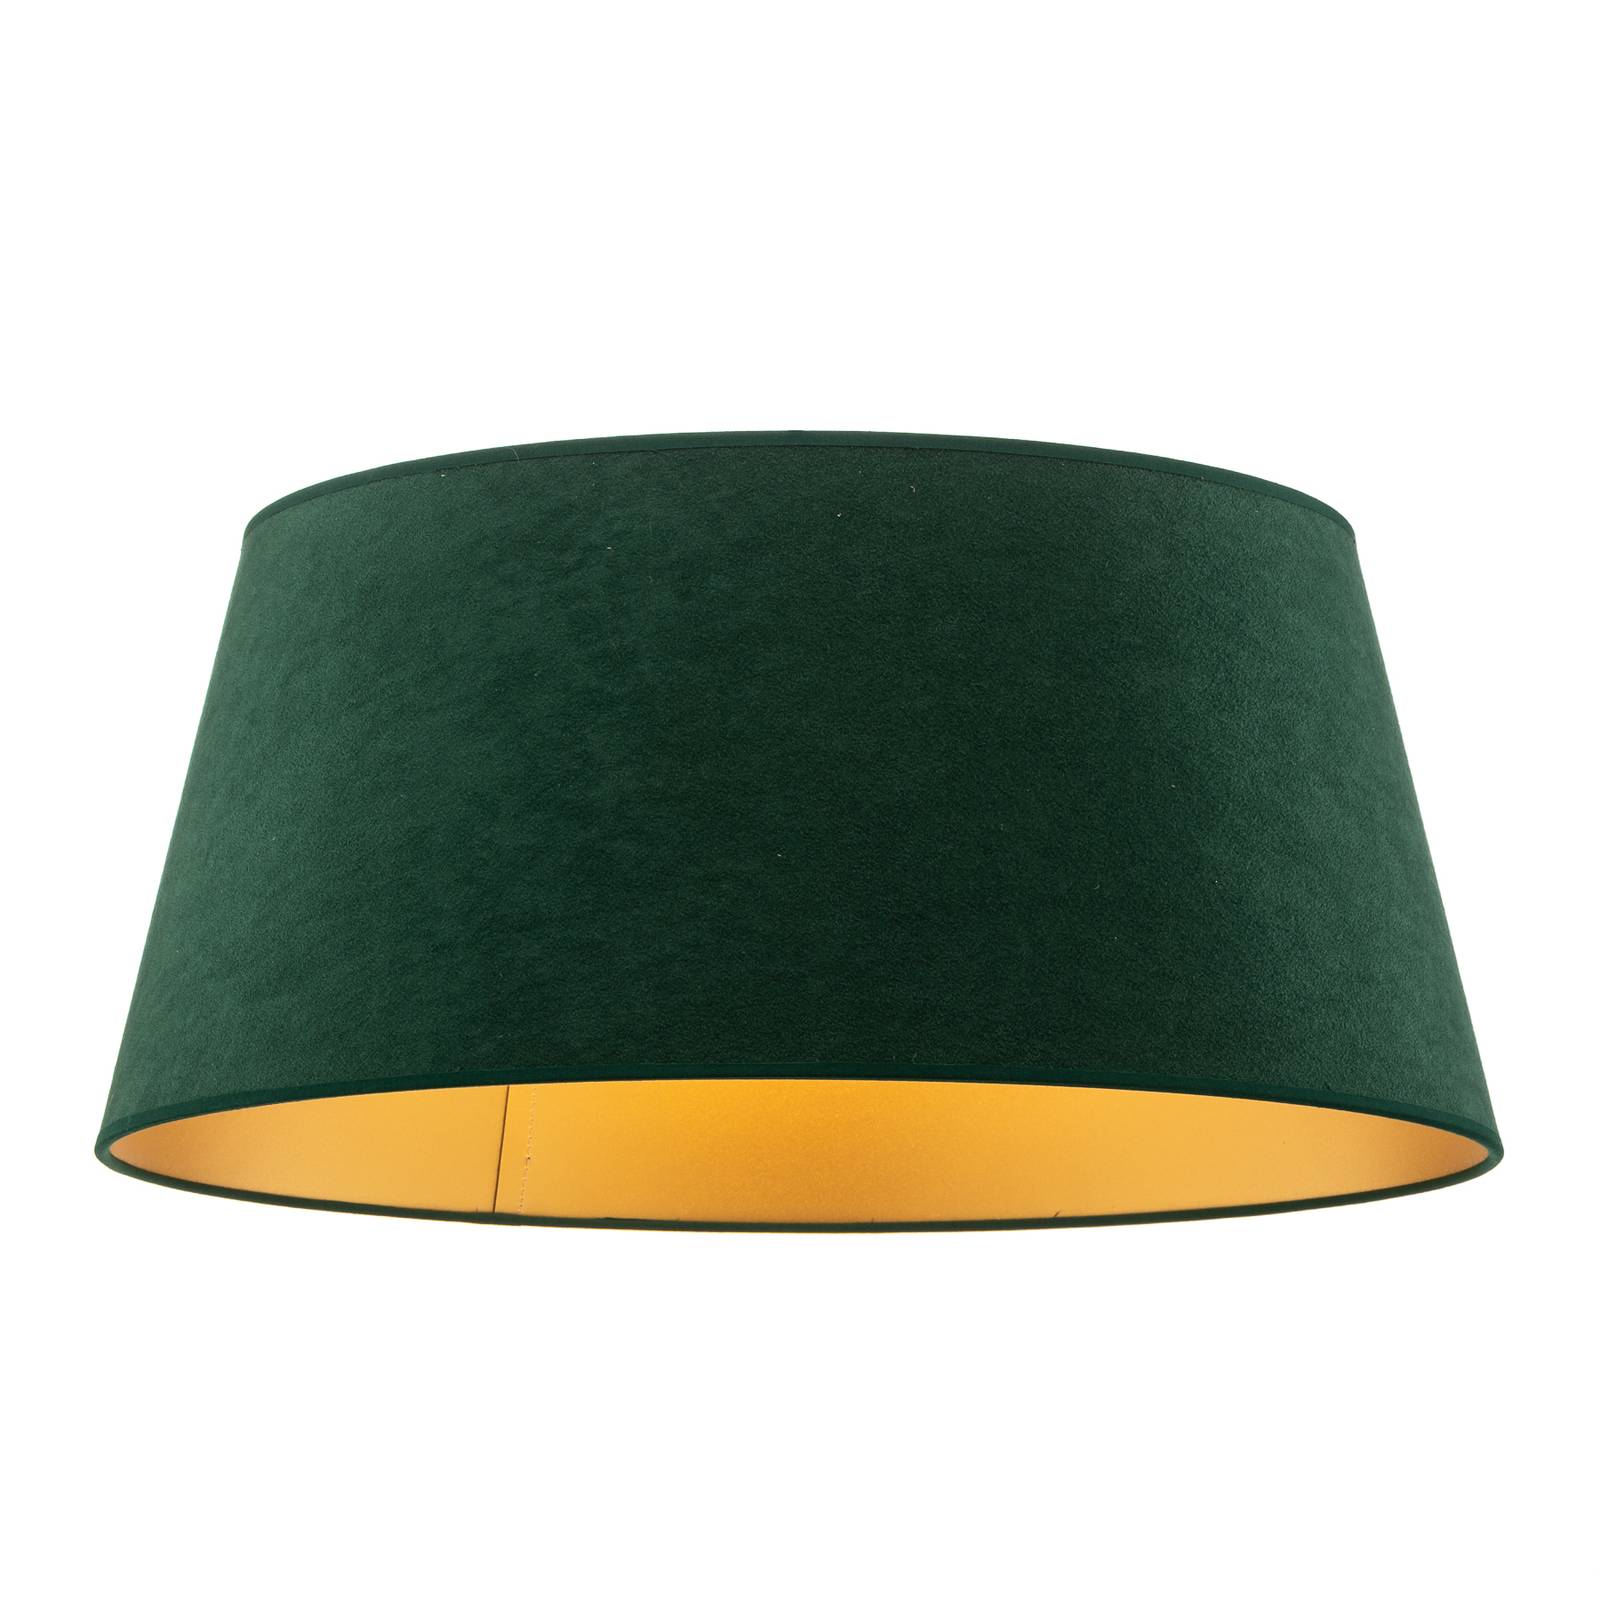 Cone lampeskærm højde 22,5 cm mørkegrøn/guld